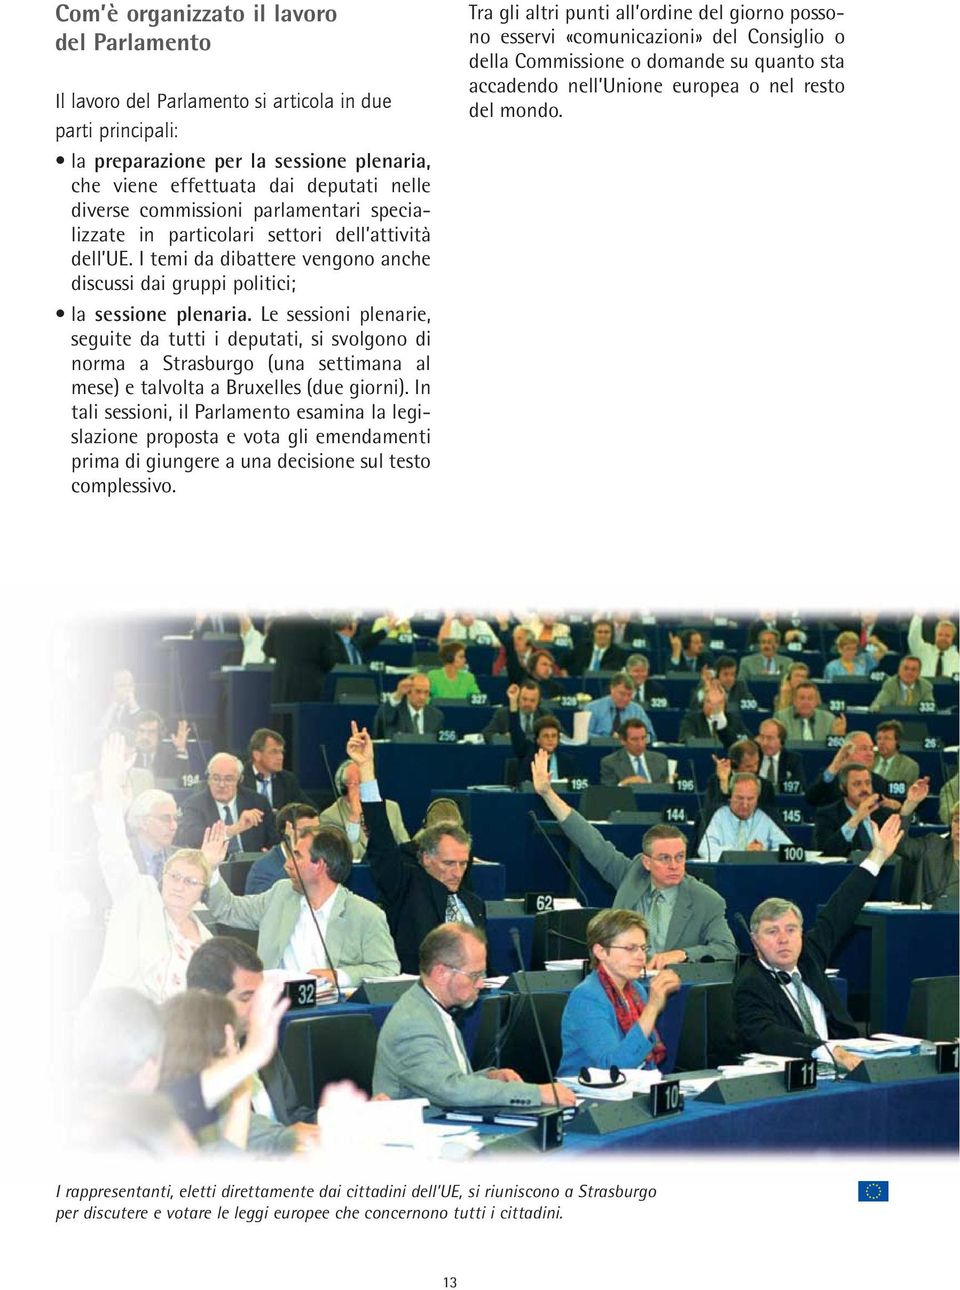 Le sessioni plenarie, seguite da tutti i deputati, si svolgono di norma a Strasburgo (una settimana al mese) e talvolta a Bruxelles (due giorni).